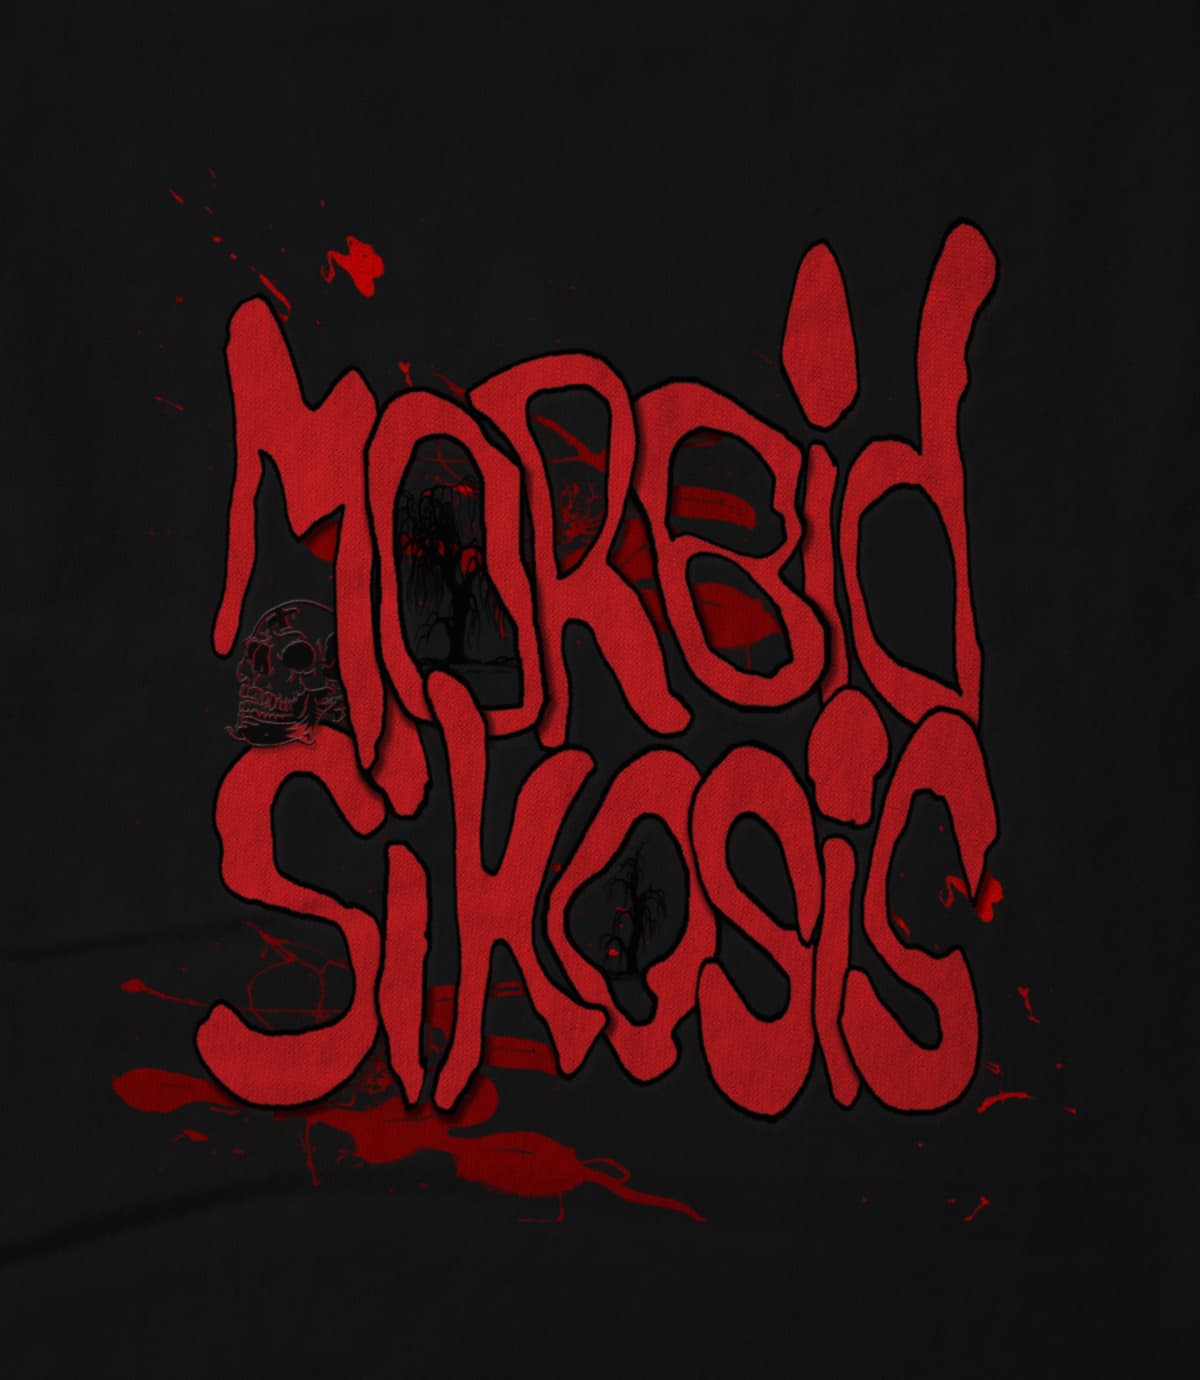 Morbid Sikosis